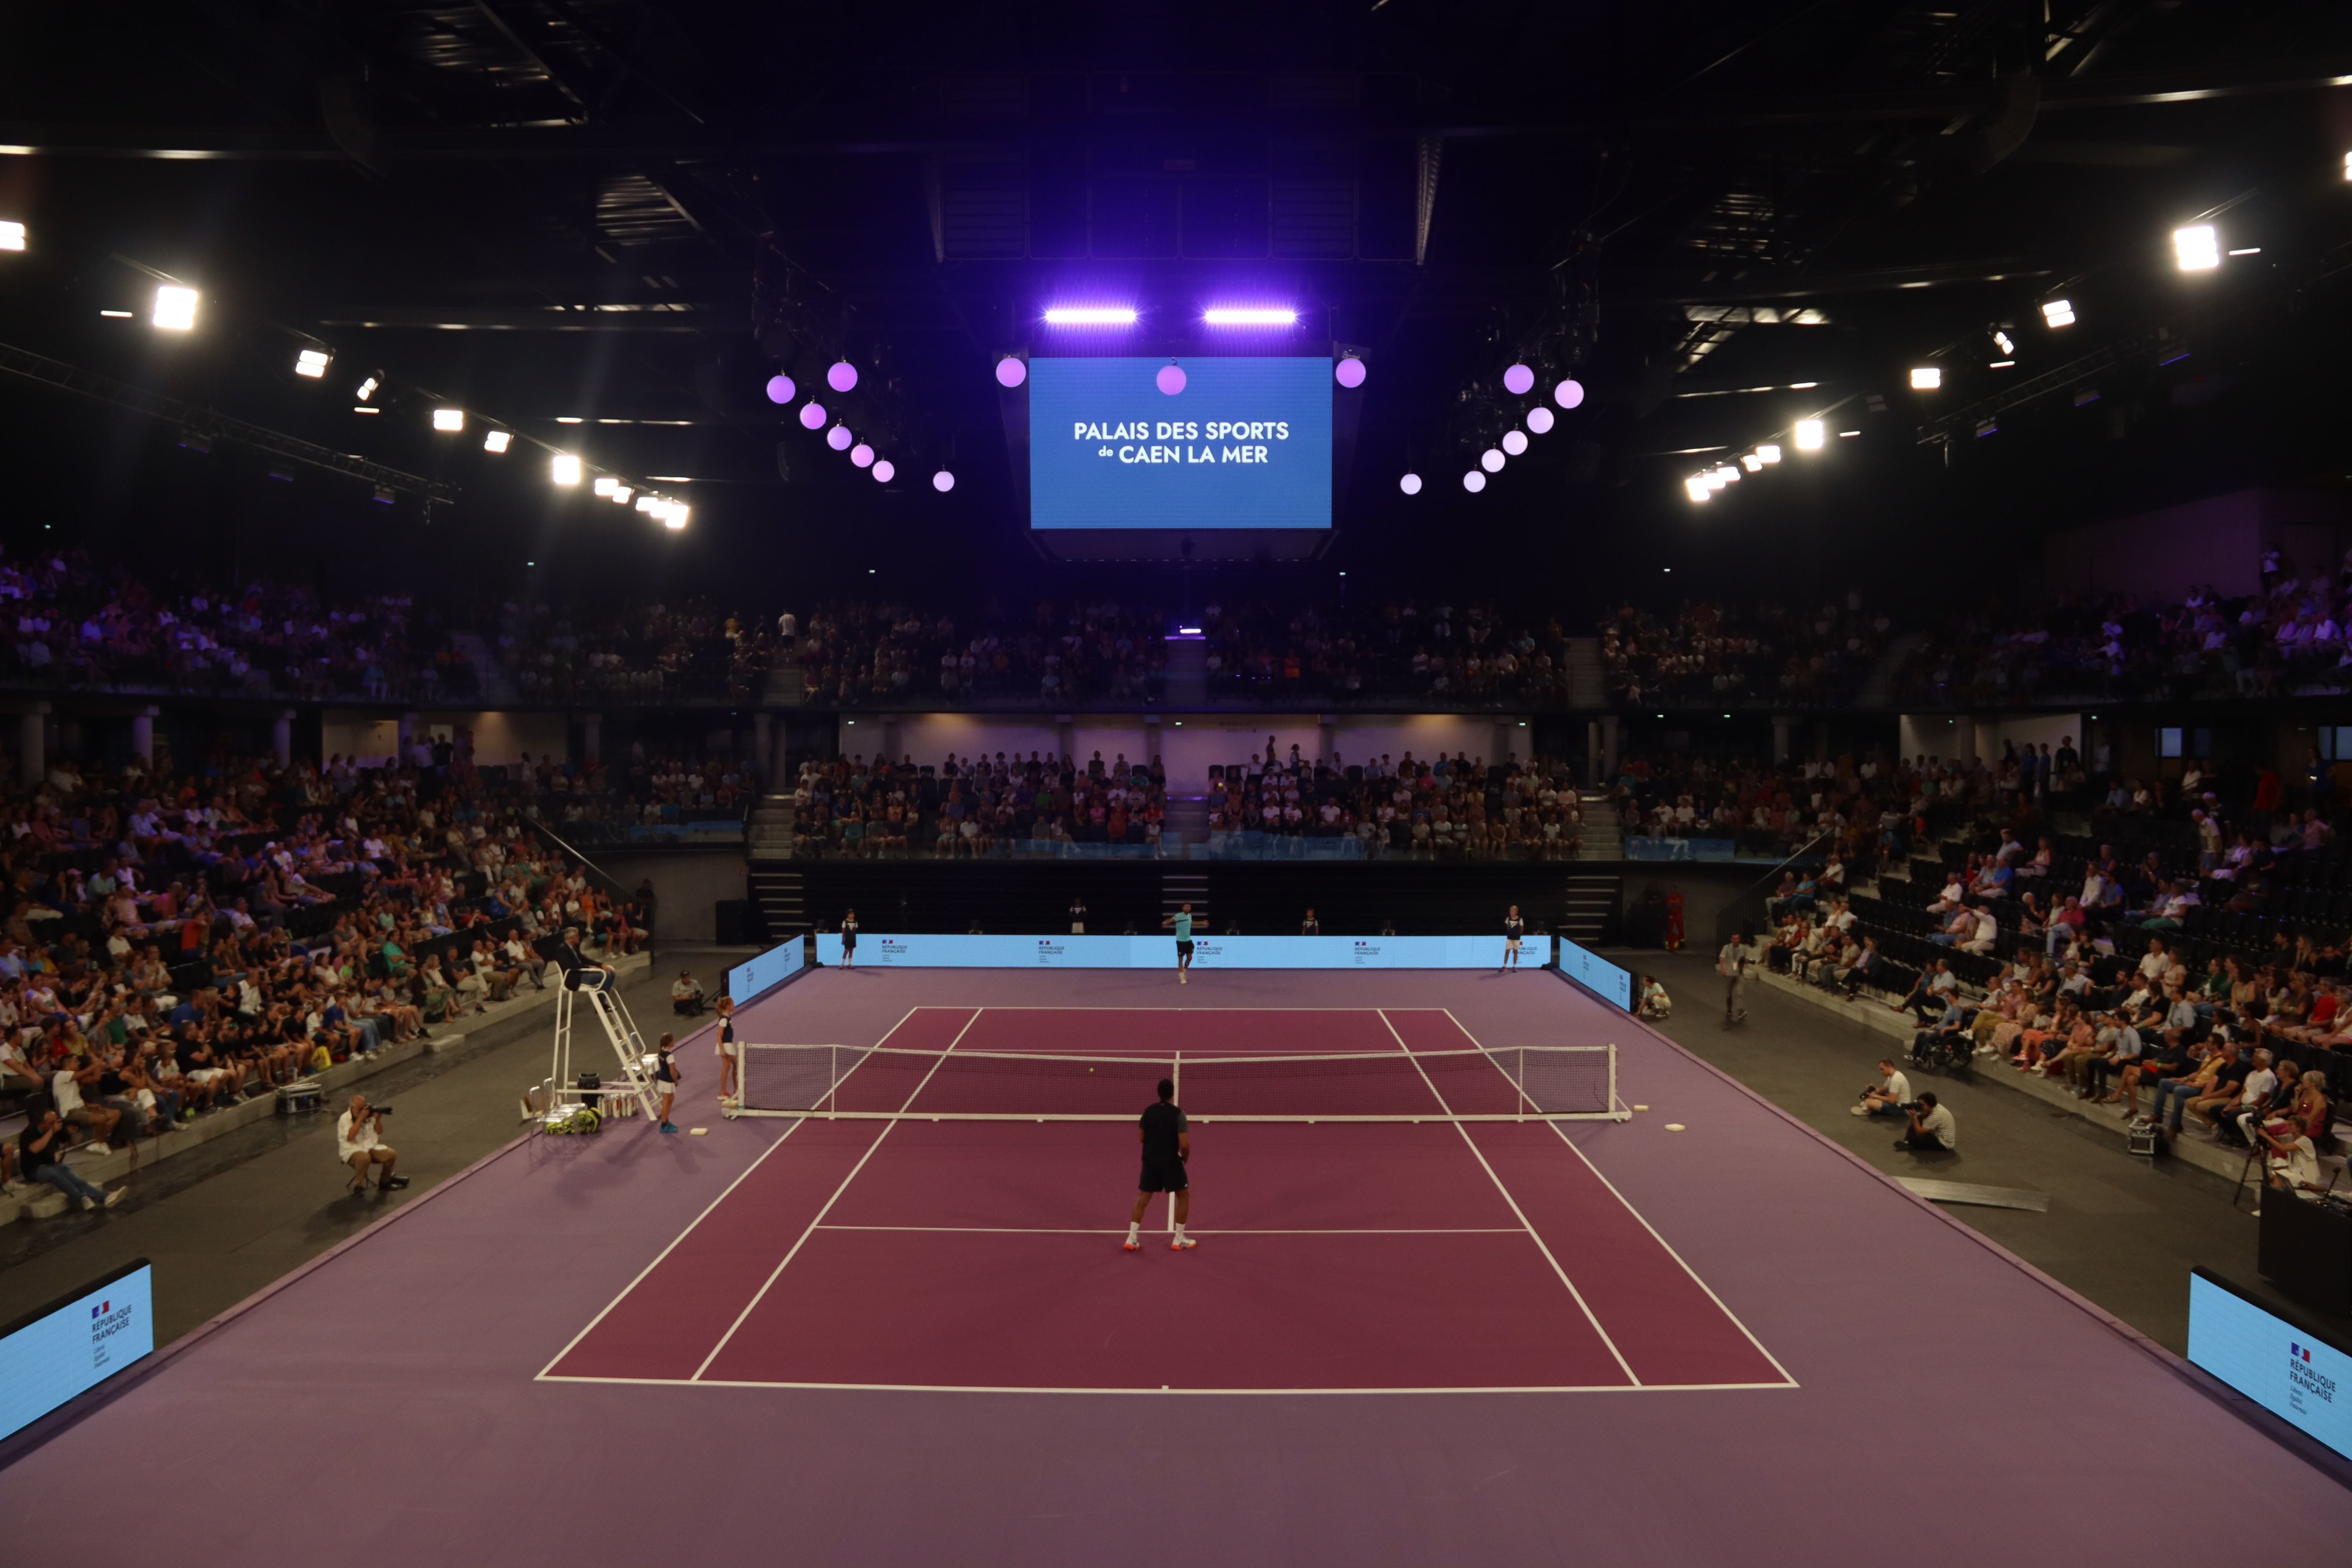 Le Palais des sports de Caen-la-Mer, pour sa soirée d'inauguration en configuration tennis, pour répéter l'Open de Caen, prévue en décembre dans le nouvel écrin.